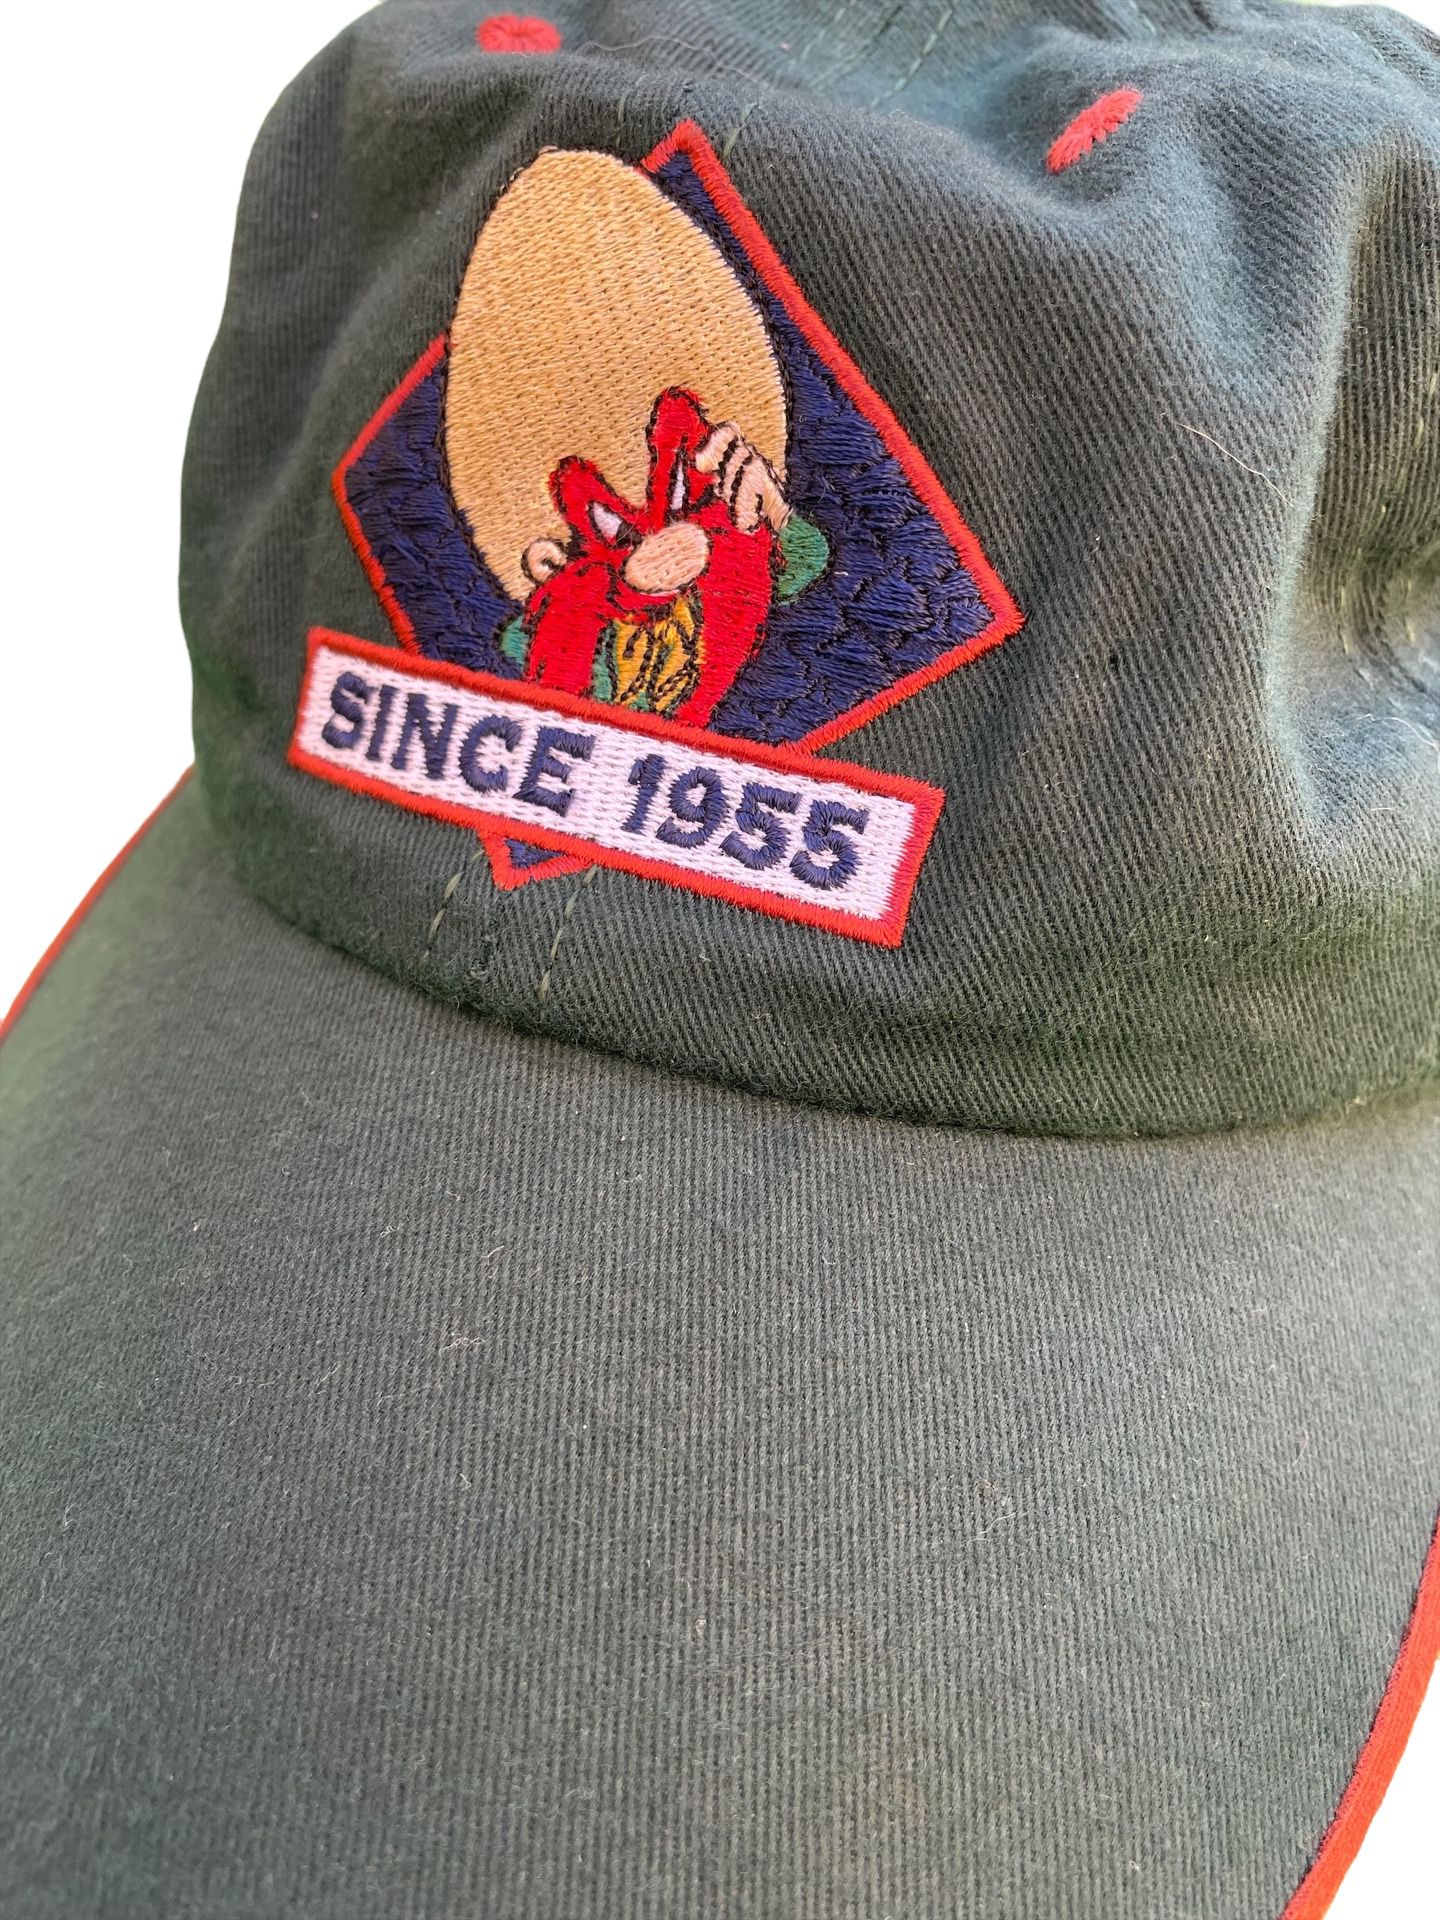 Vtg Yosemite Sam Looney Tunes Acme Clo Dad Hat Cap Since 1955